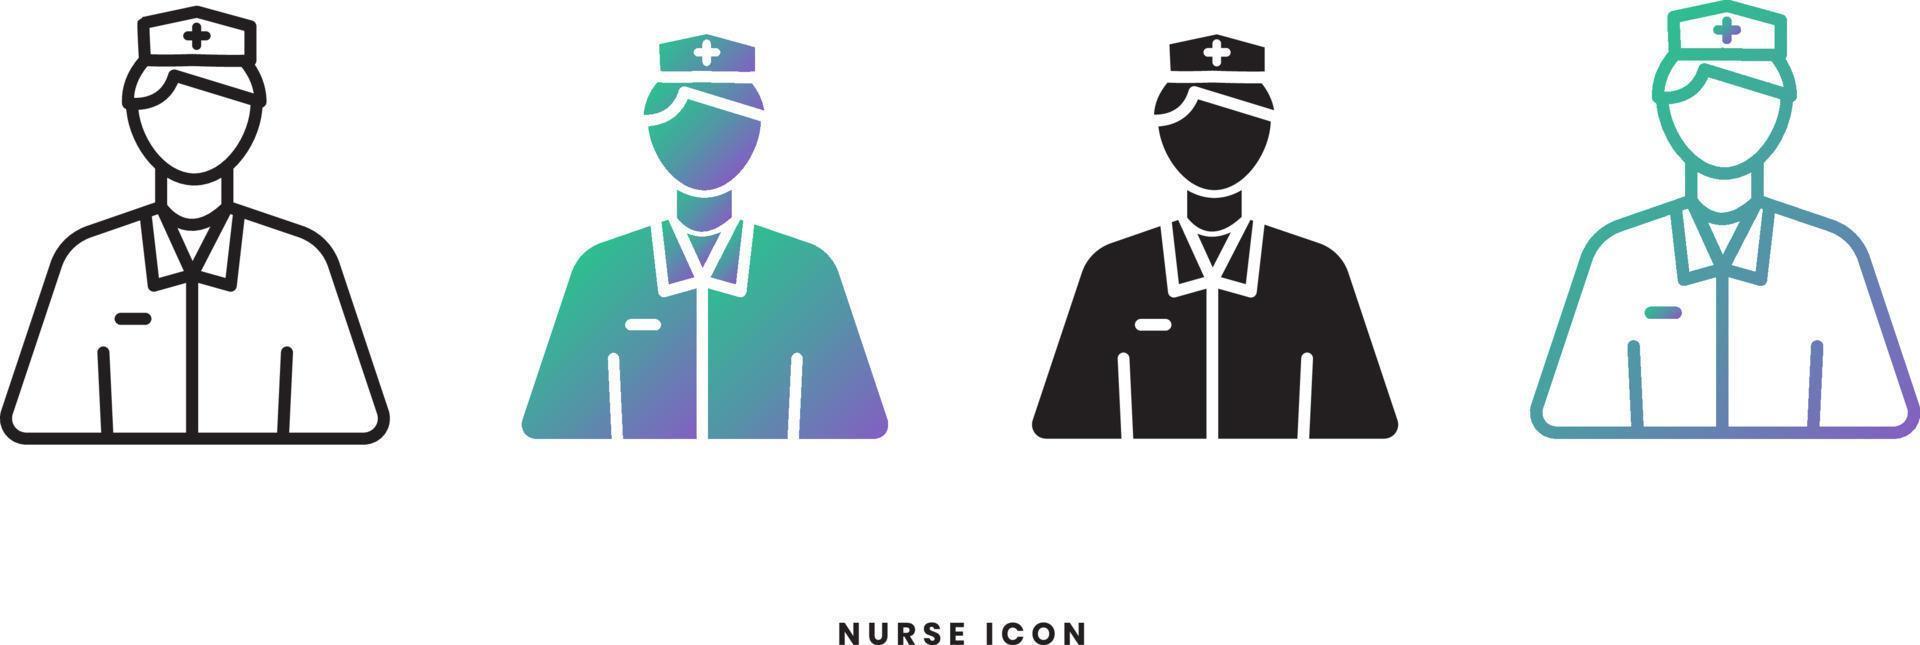 icône vectorielle infirmière masculine dans les styles solide, dégradé et ligne. couleurs tendance. isolé sur fond blanc vecteur